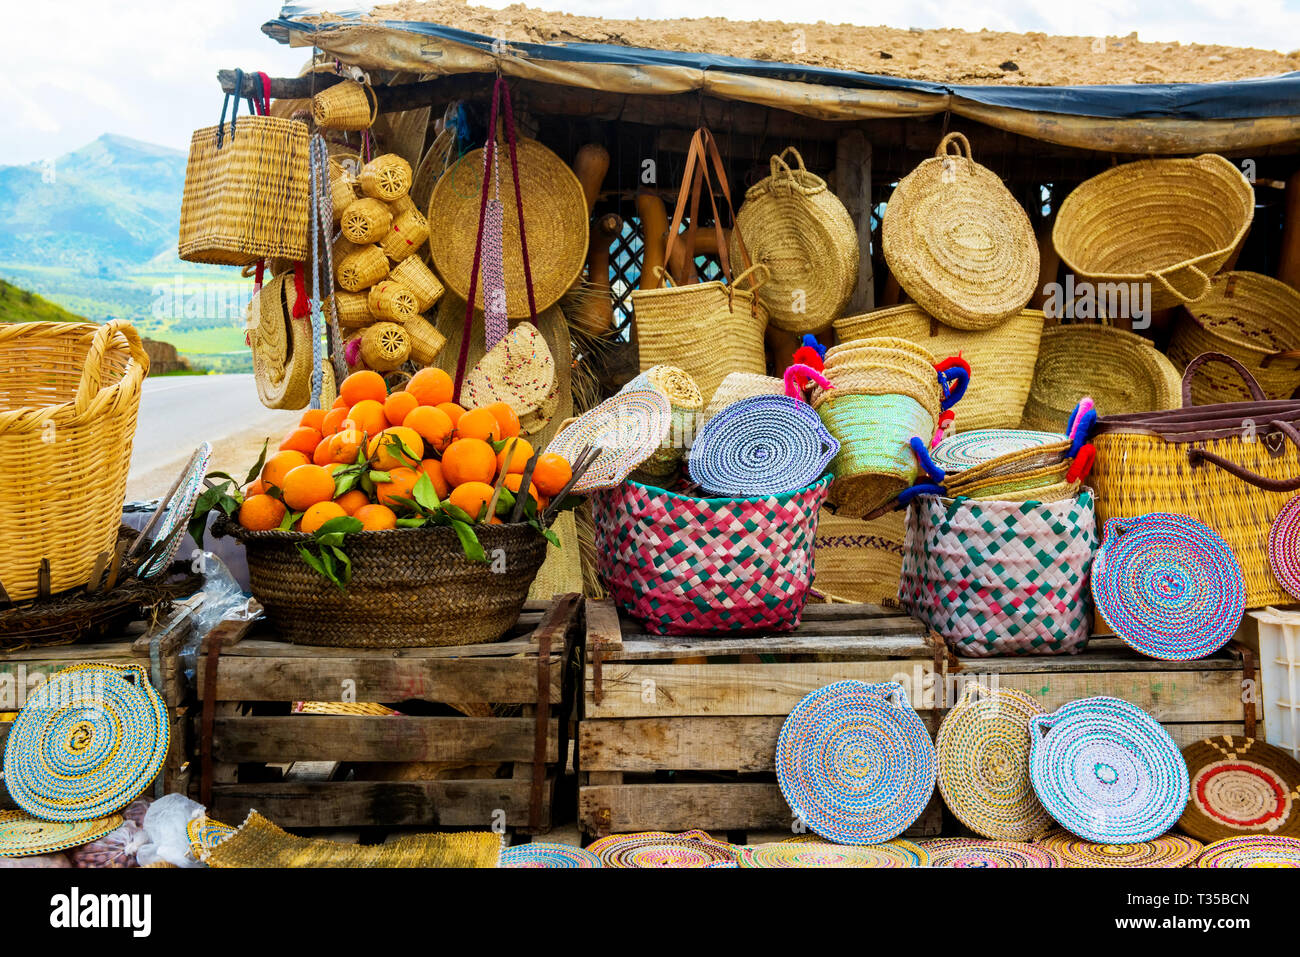 Chapeaux en osier artisanat, les oranges et autres souvenirs dans le marché du Maroc Banque D'Images